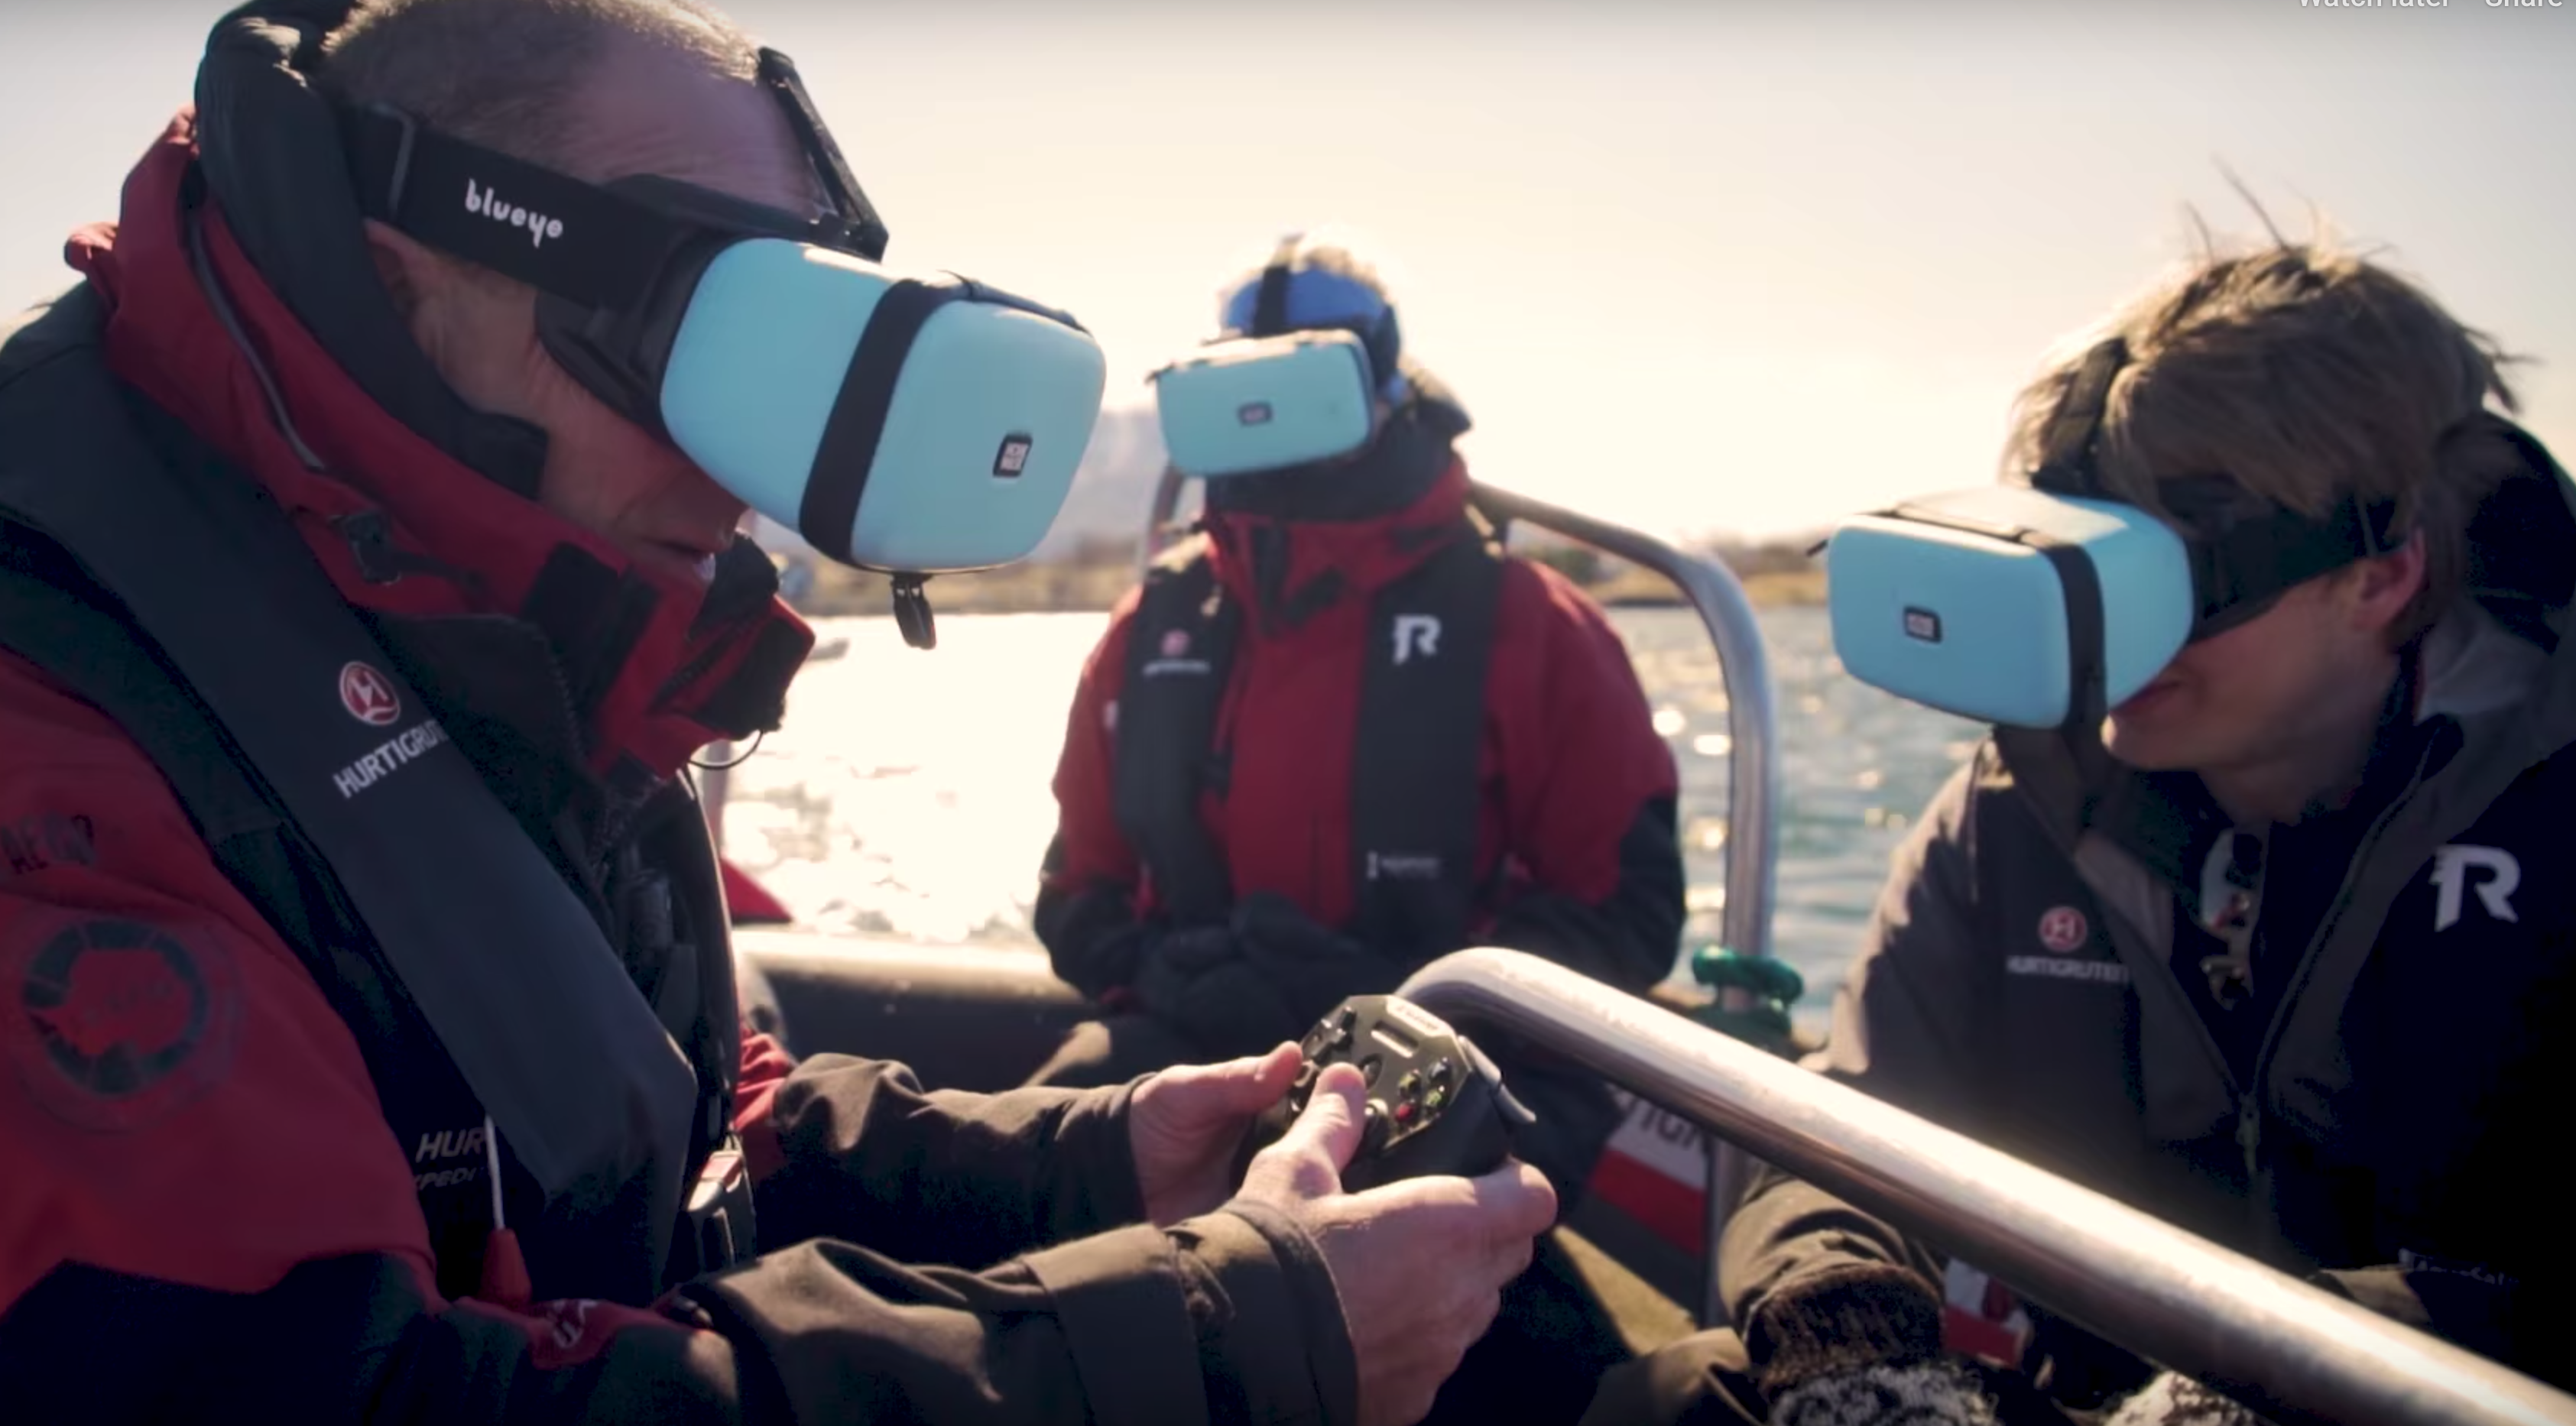     Personer i en båt som nyter live undervannsbilder gjennom en smarttelefon plassert i en MovieMask.